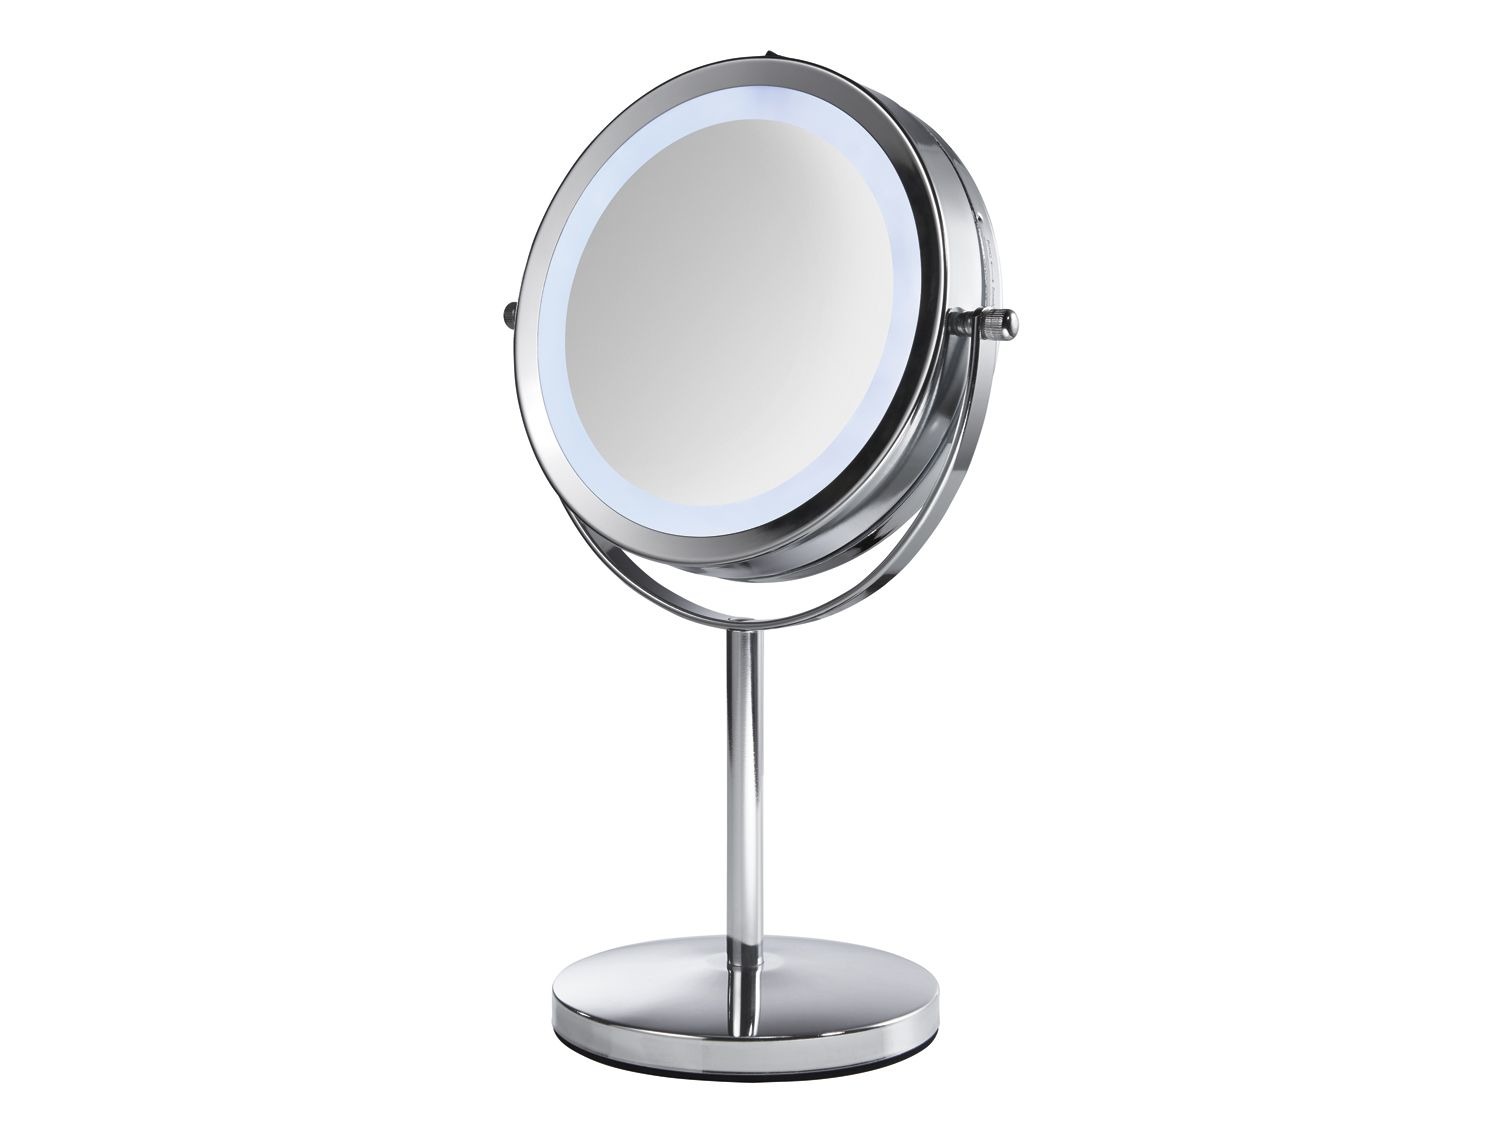 Melbourne Bakkerij talent miomare LED make-up spiegel online kopen | LIDL